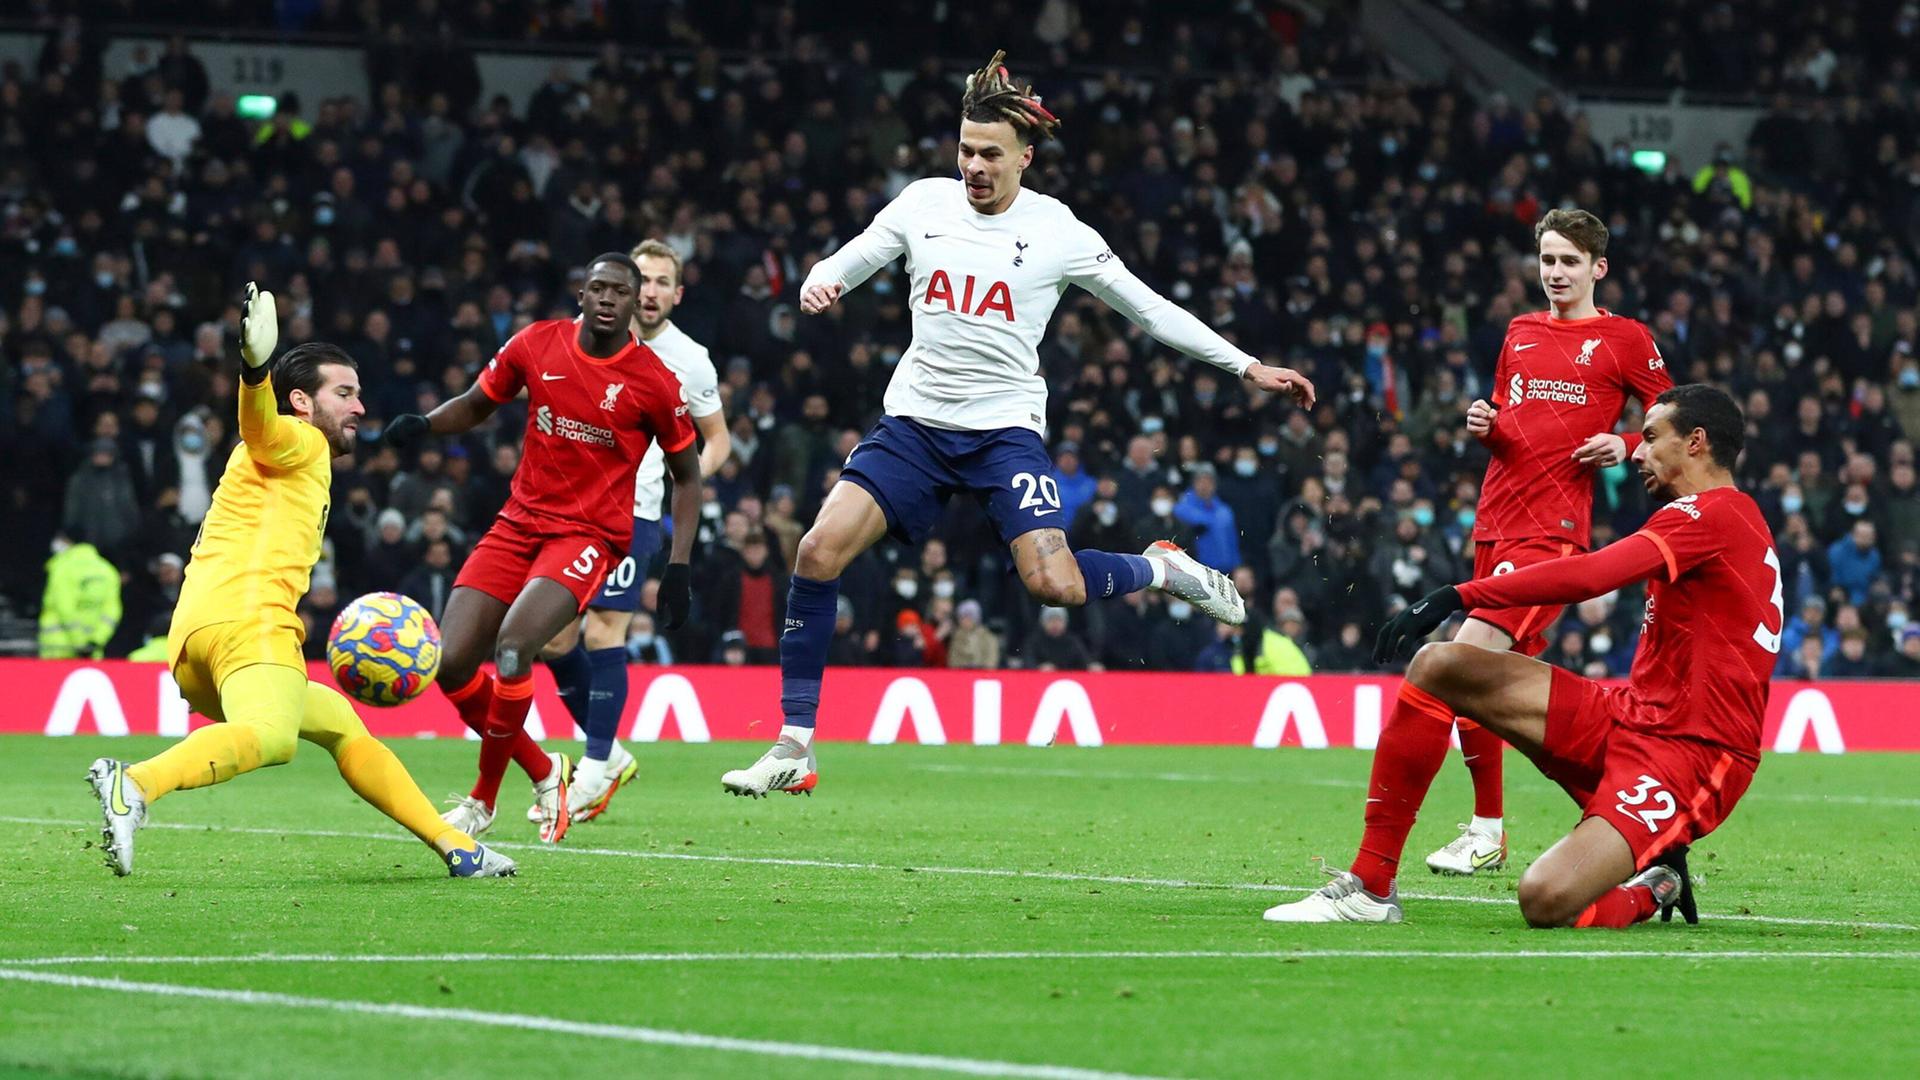 Dele Alli von Tottenham Hotspur schießt aufs Liverpooler Tor.